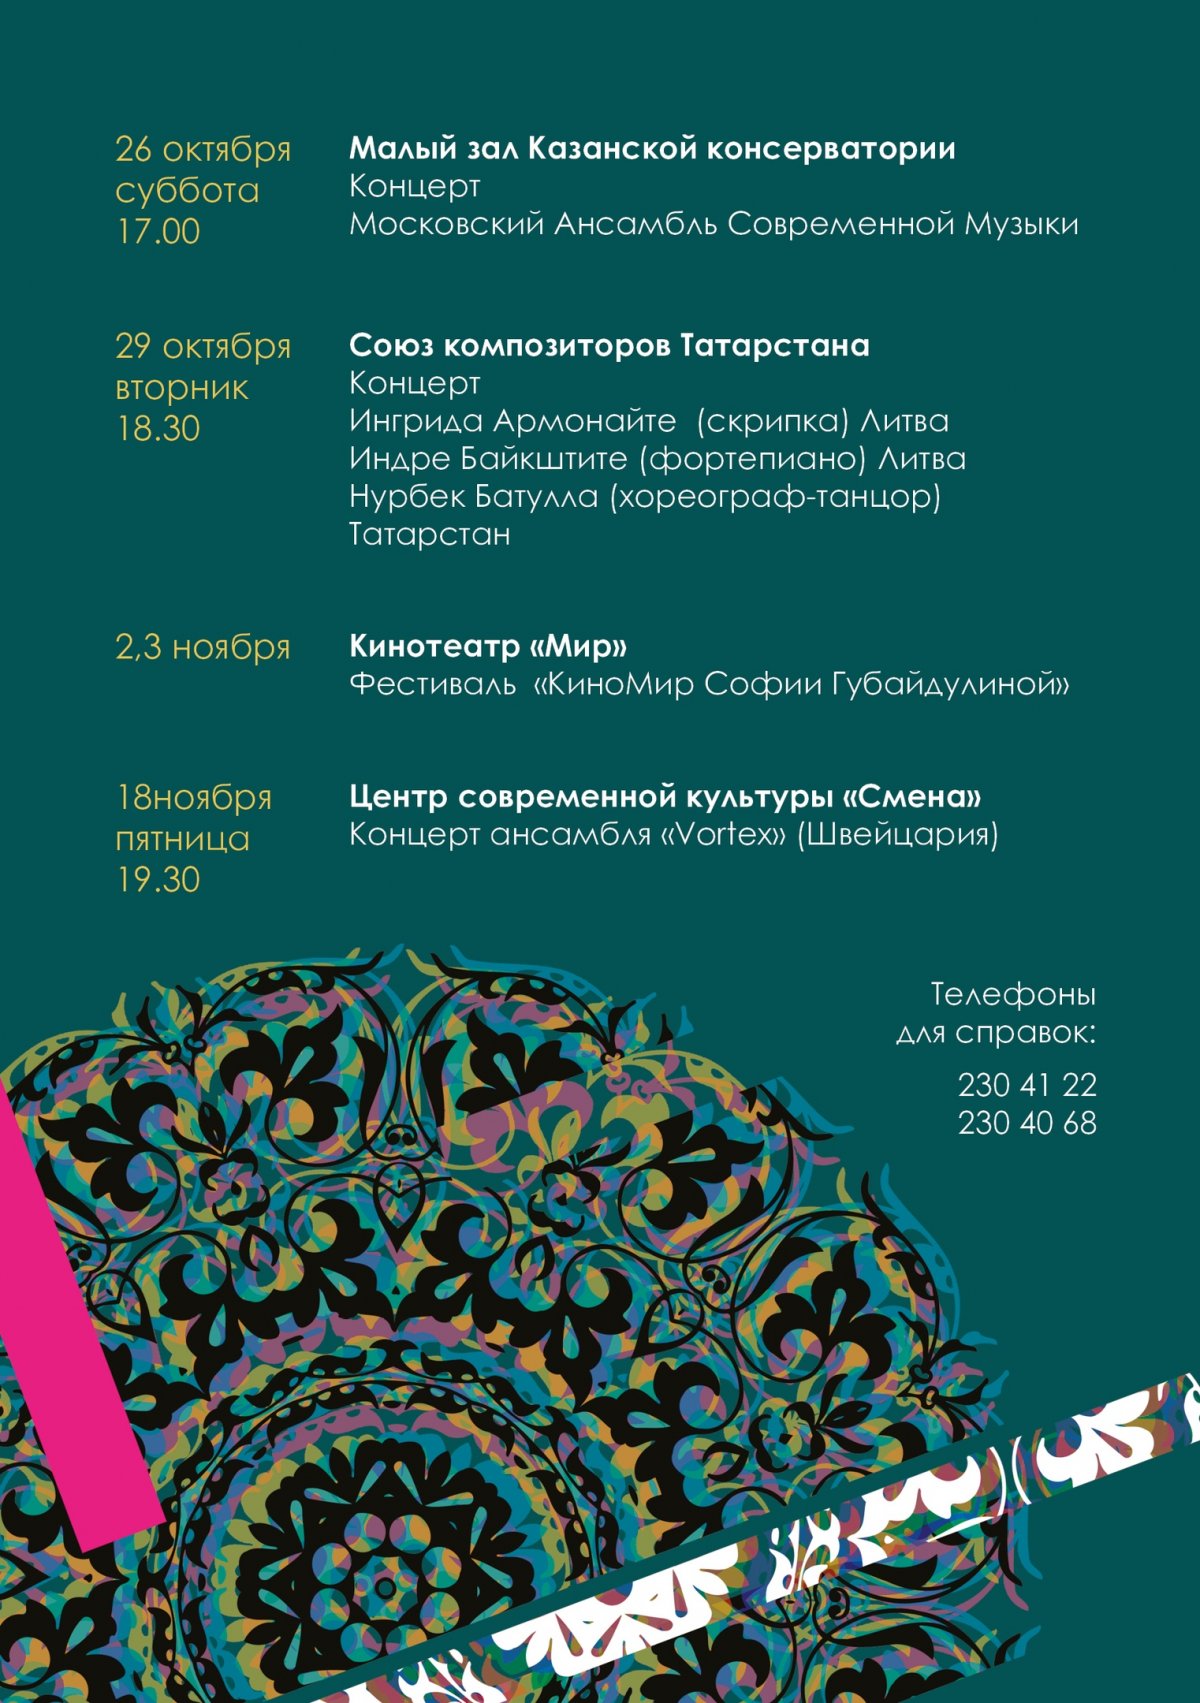 🎶C 8 октября по 18 ноября в Казани проходит Международный музыкальный фестиваль «МузТранзит: Восток-Запад». Он включает в себя концерты, творческие встречи и конференции, которые проходят на креативных площадках Казани.